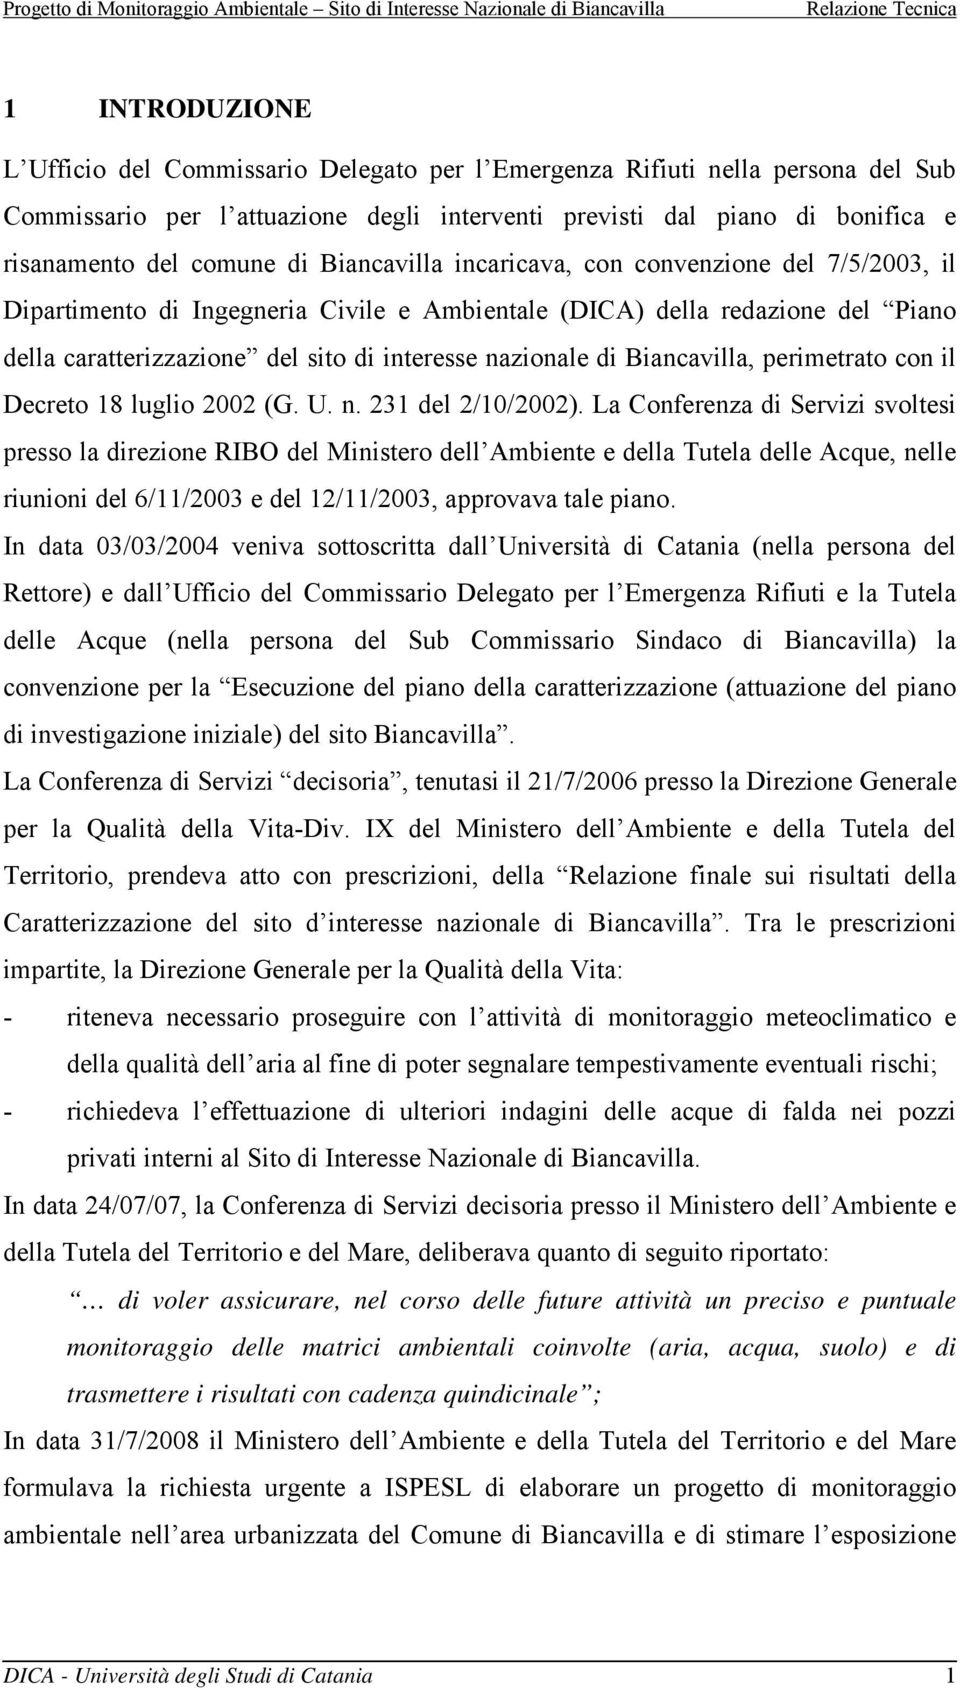 Biancavilla, perimetrato con il Decreto 18 luglio 2002 (G. U. n. 231 del 2/10/2002).